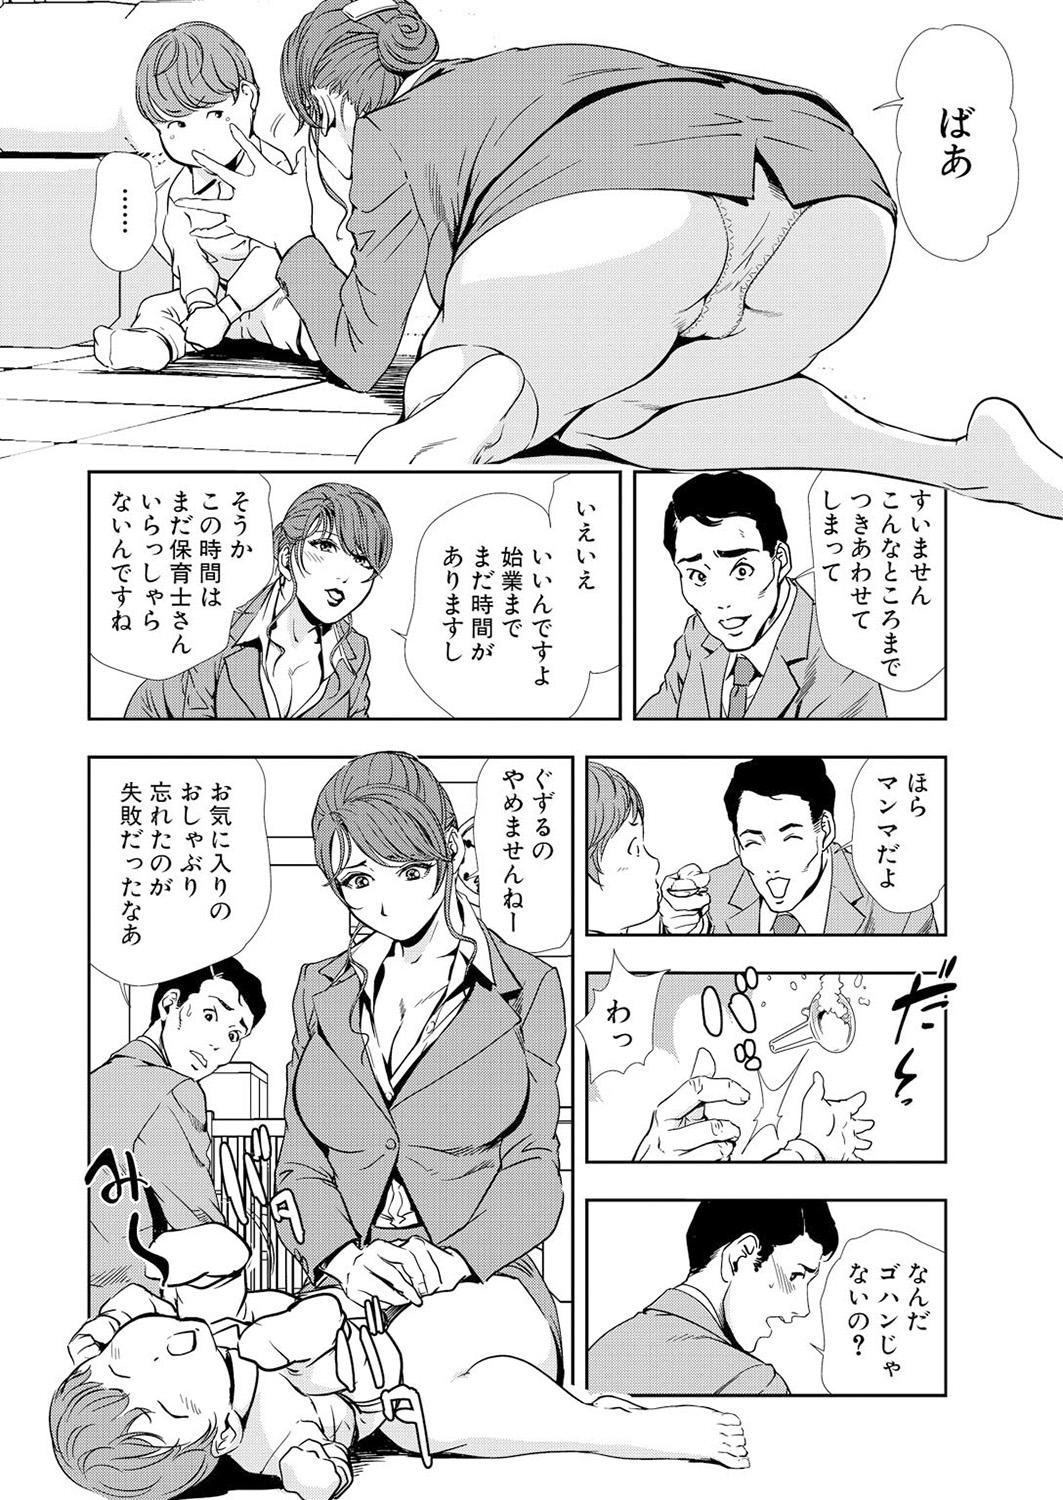 Deepthroat Nikuhisyo Yukiko 12 Flaquita - Page 8